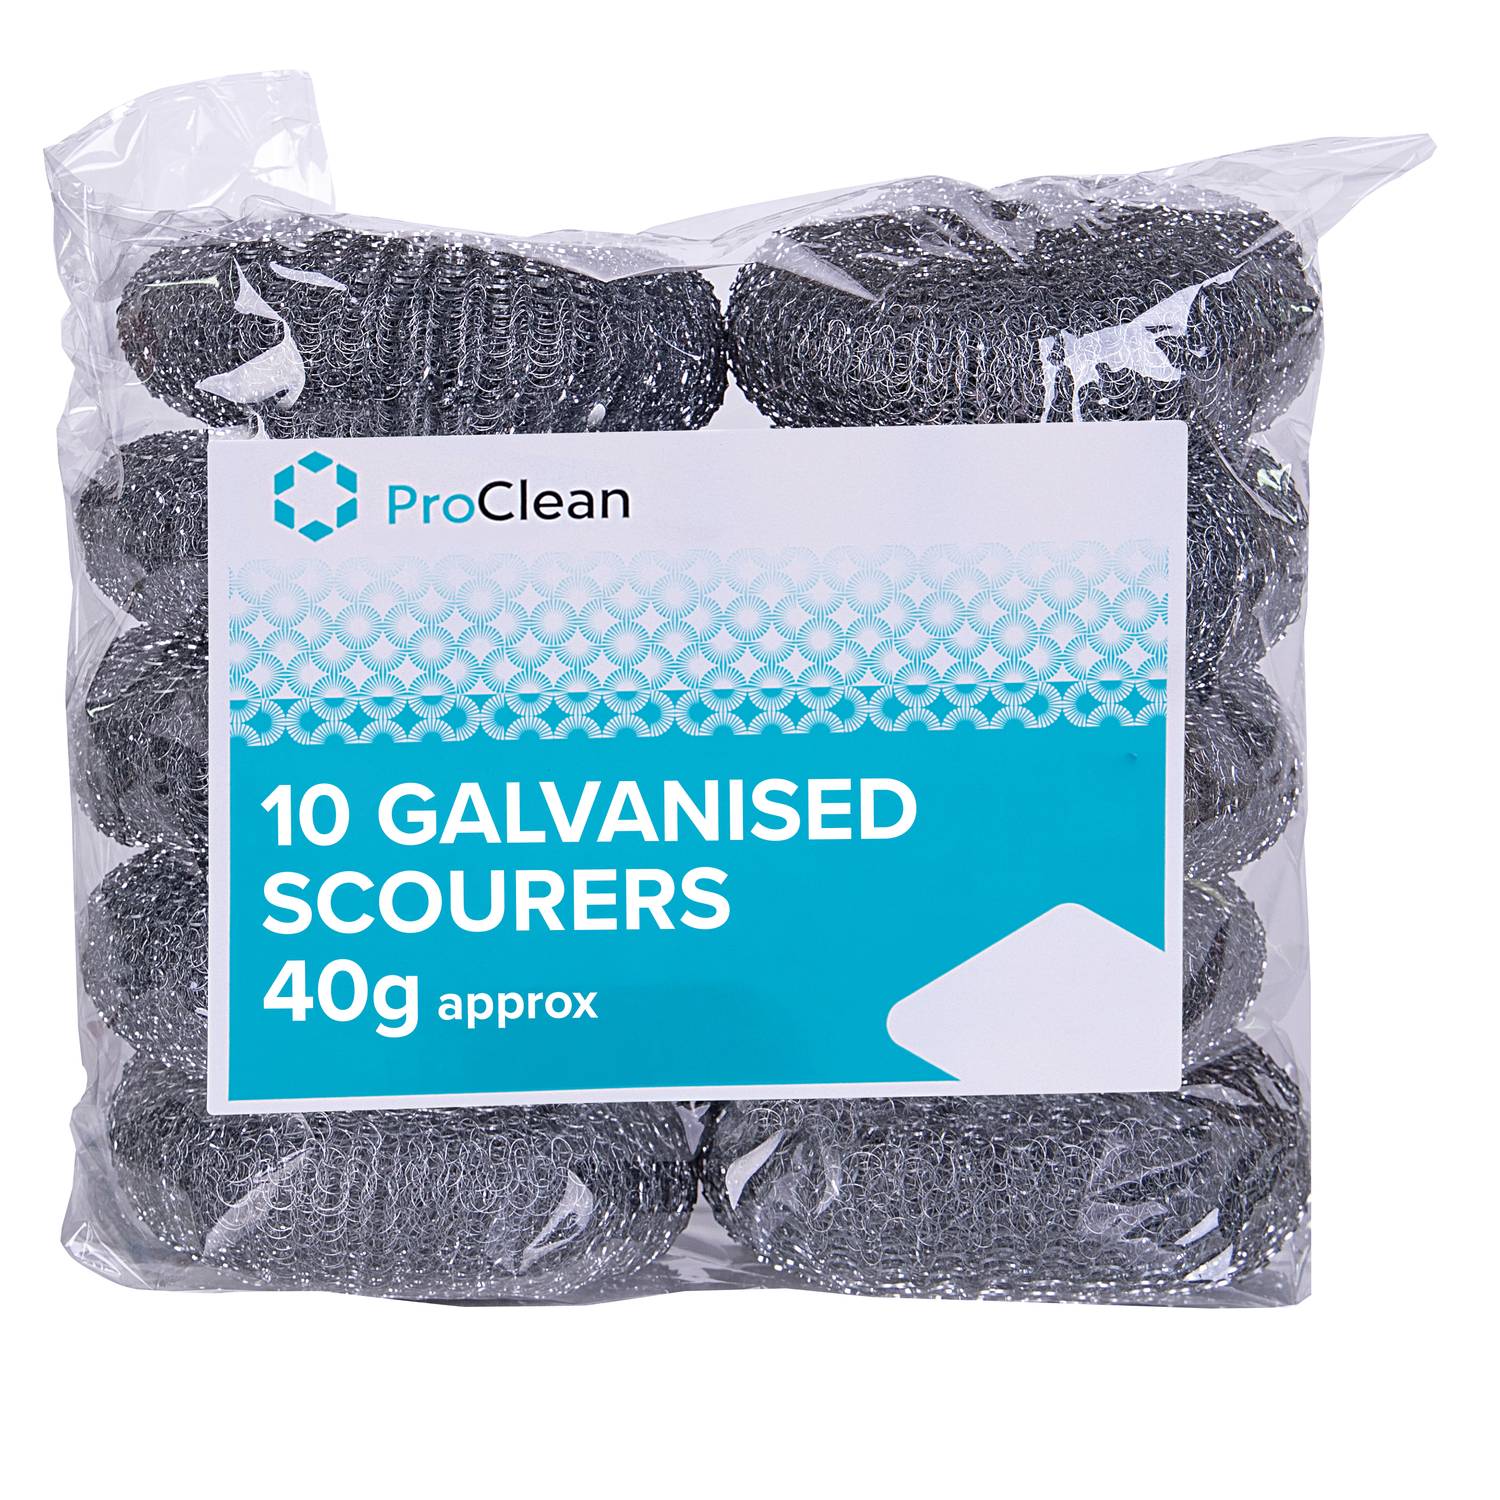 ProClean 10 Galvanished Scourer (40g) (20 x 10)